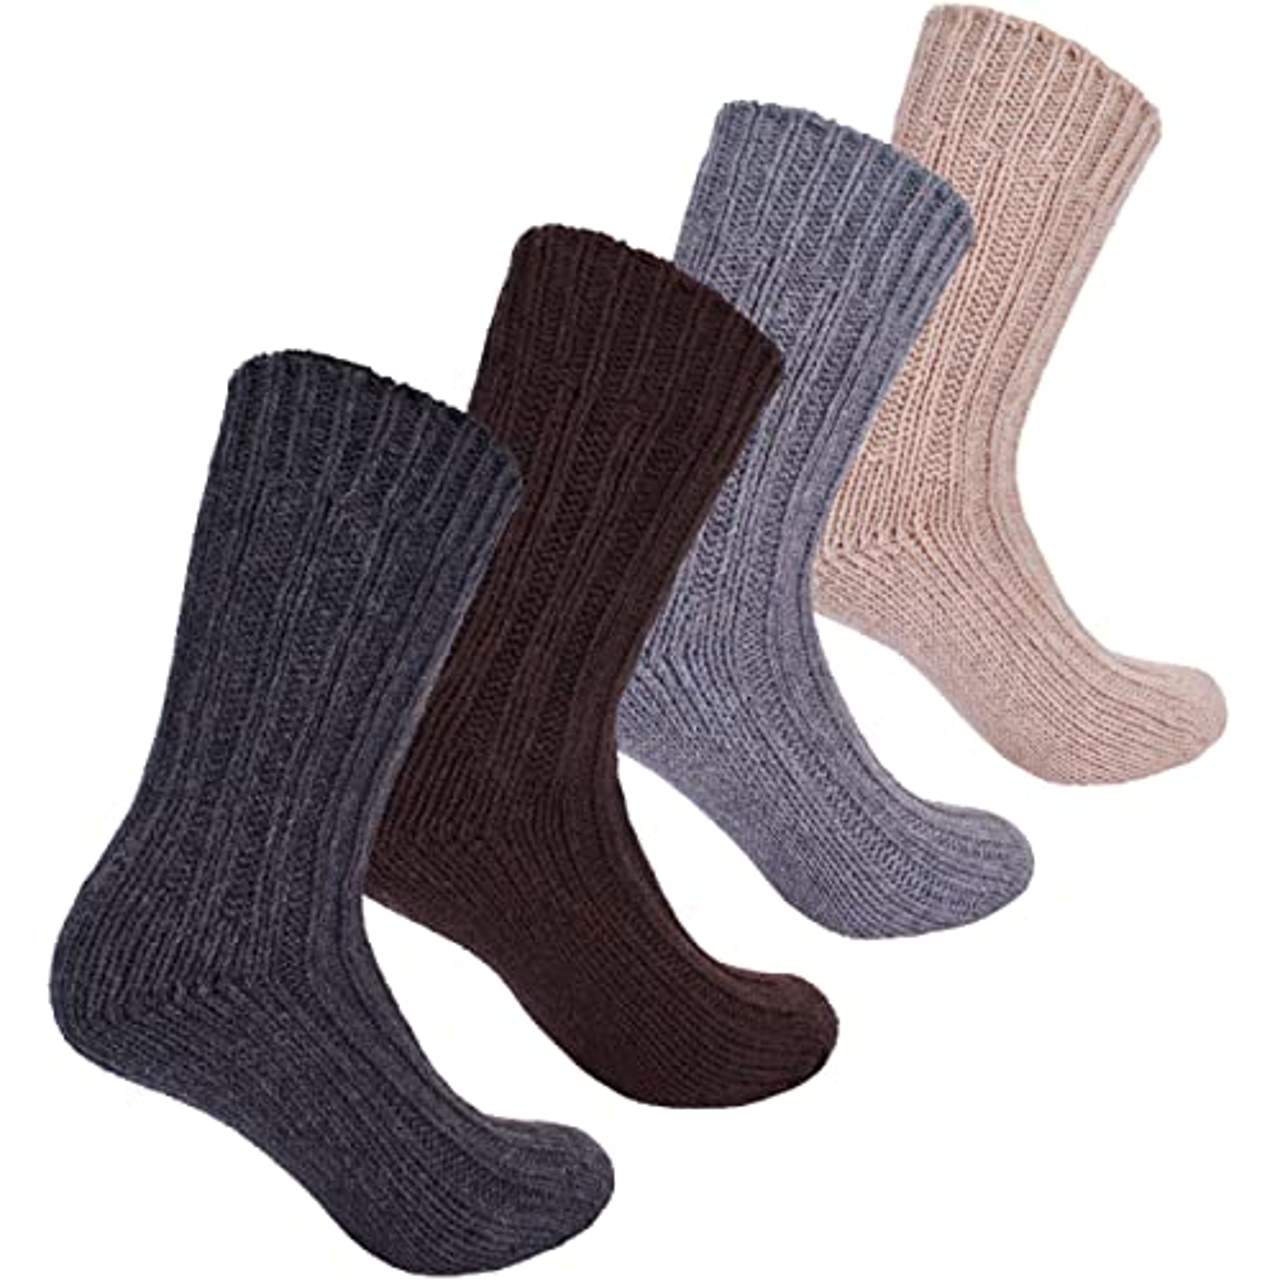 4 Paar dicke flauschige warme Alpaka Socken